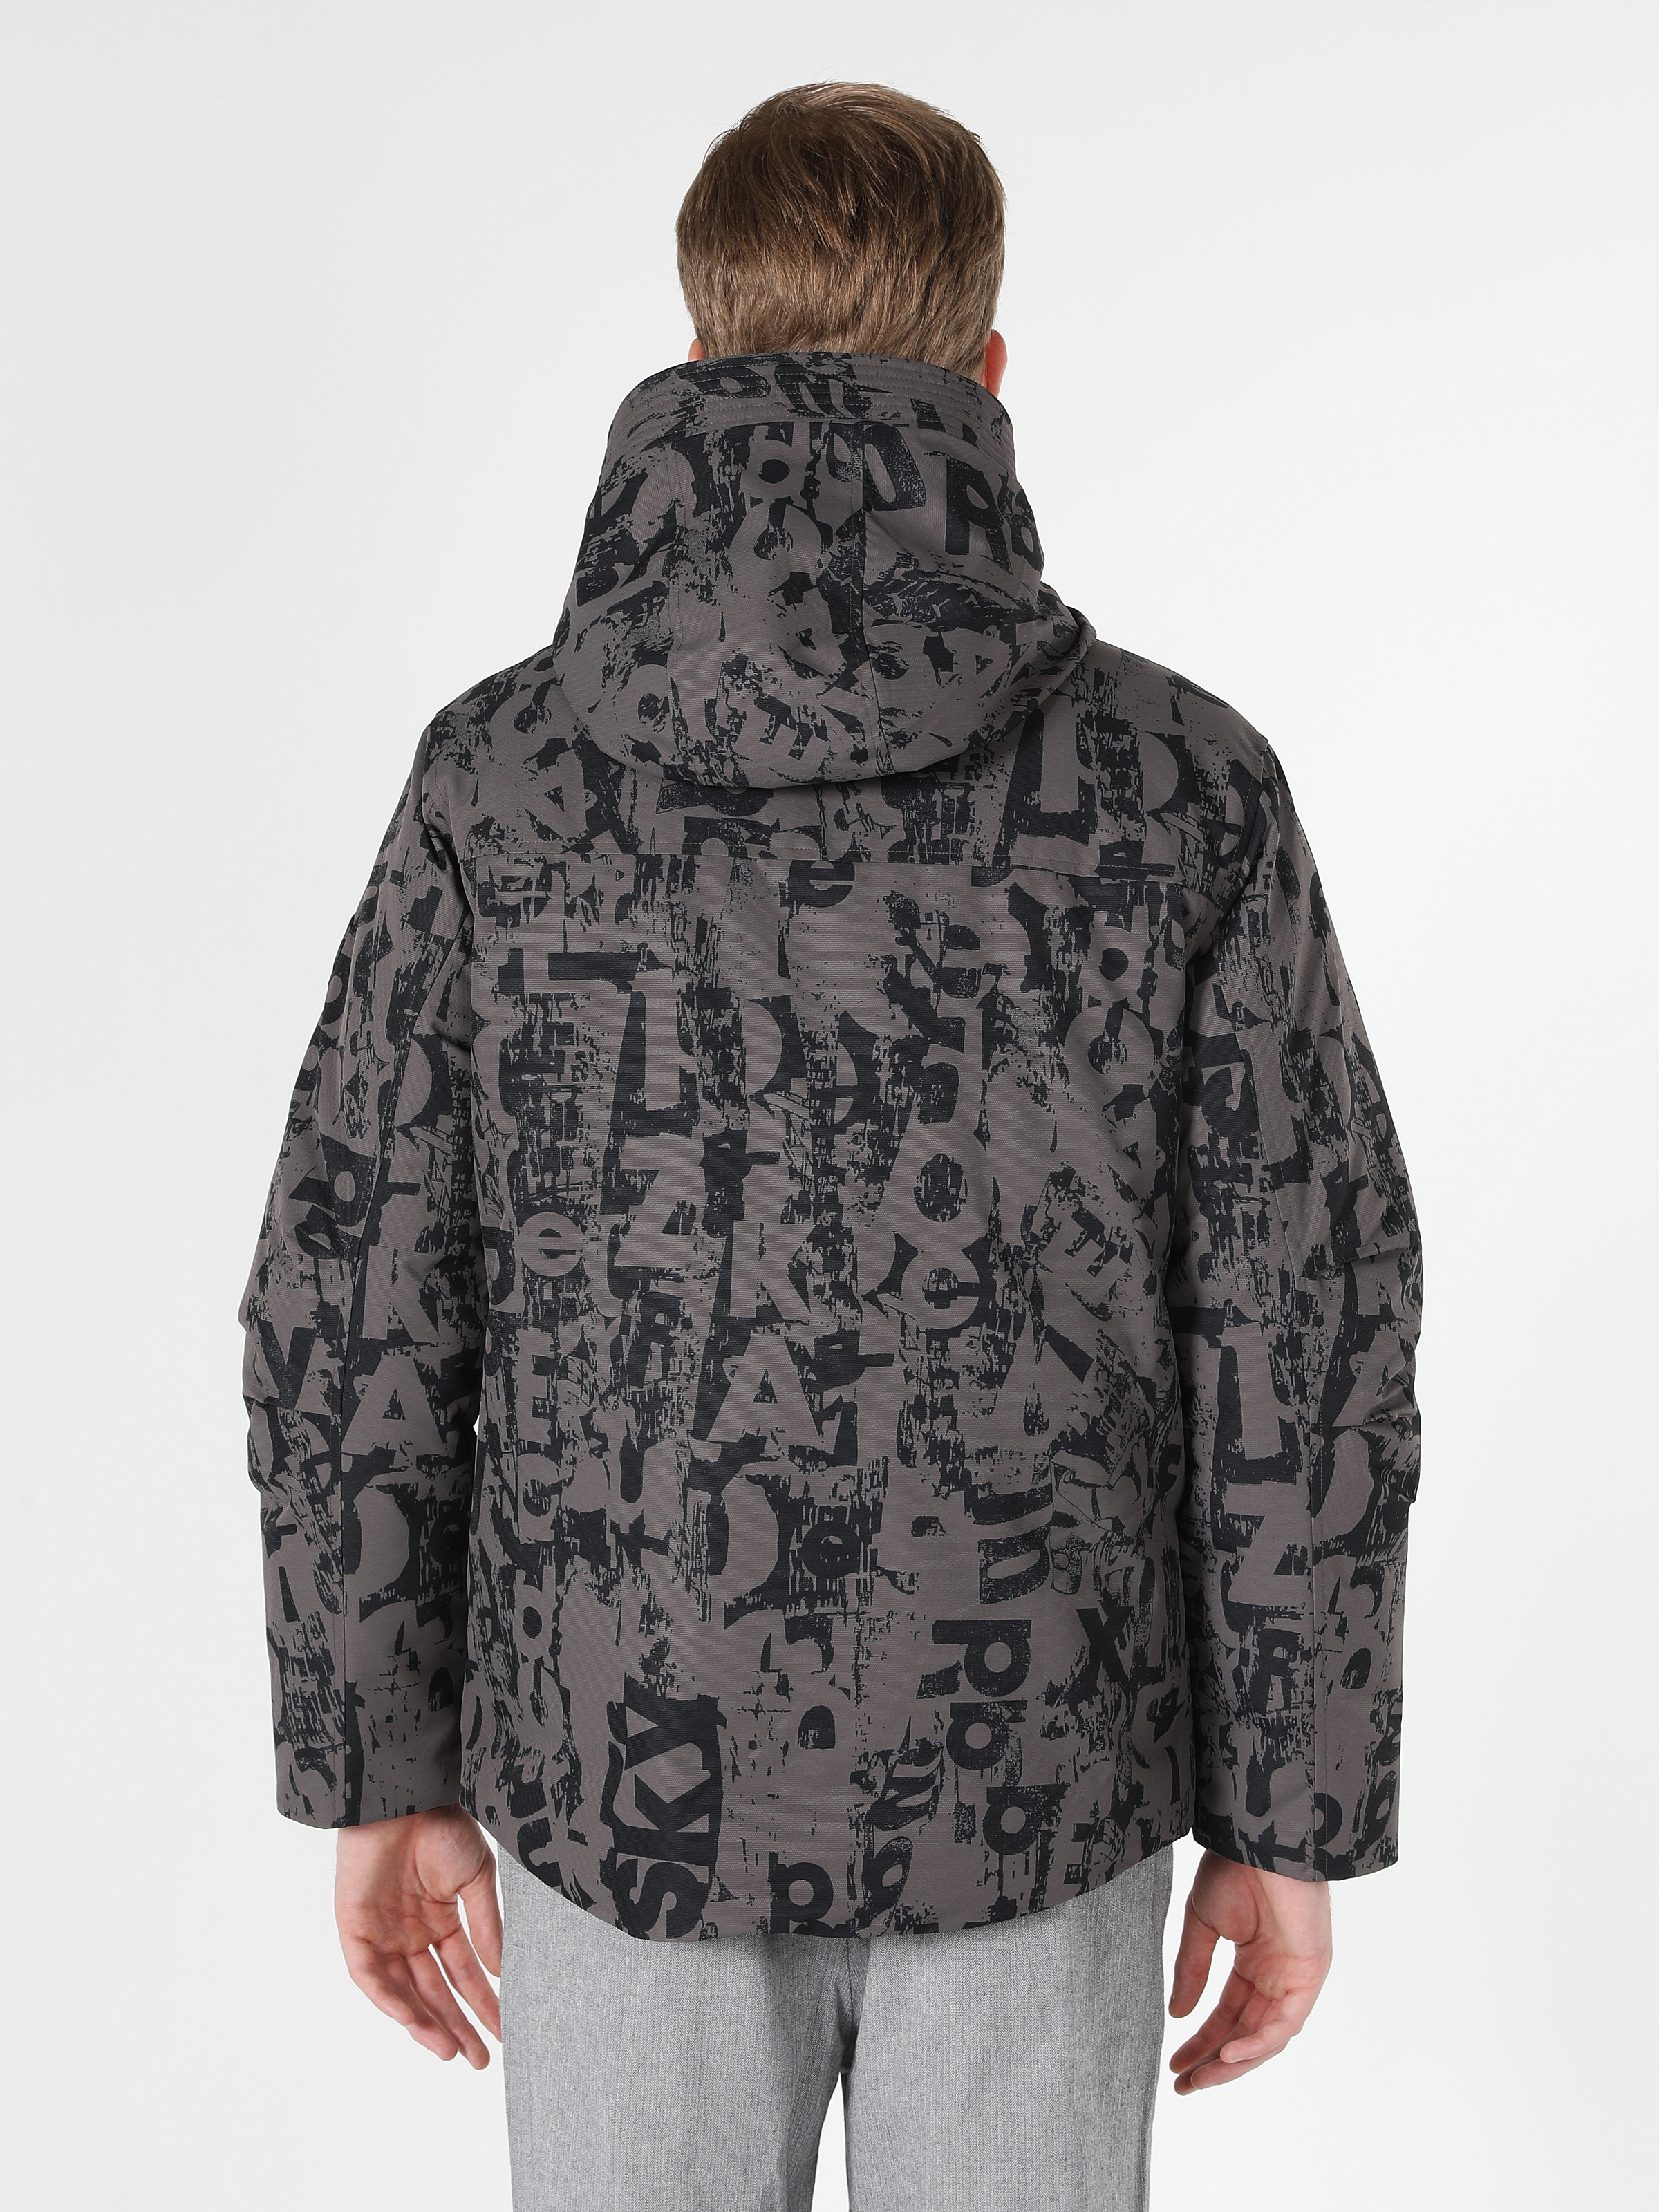 Afficher les détails de Manteau Homme Anthracite À Capuche Imprimé Puff Regular Fit Avec Poches